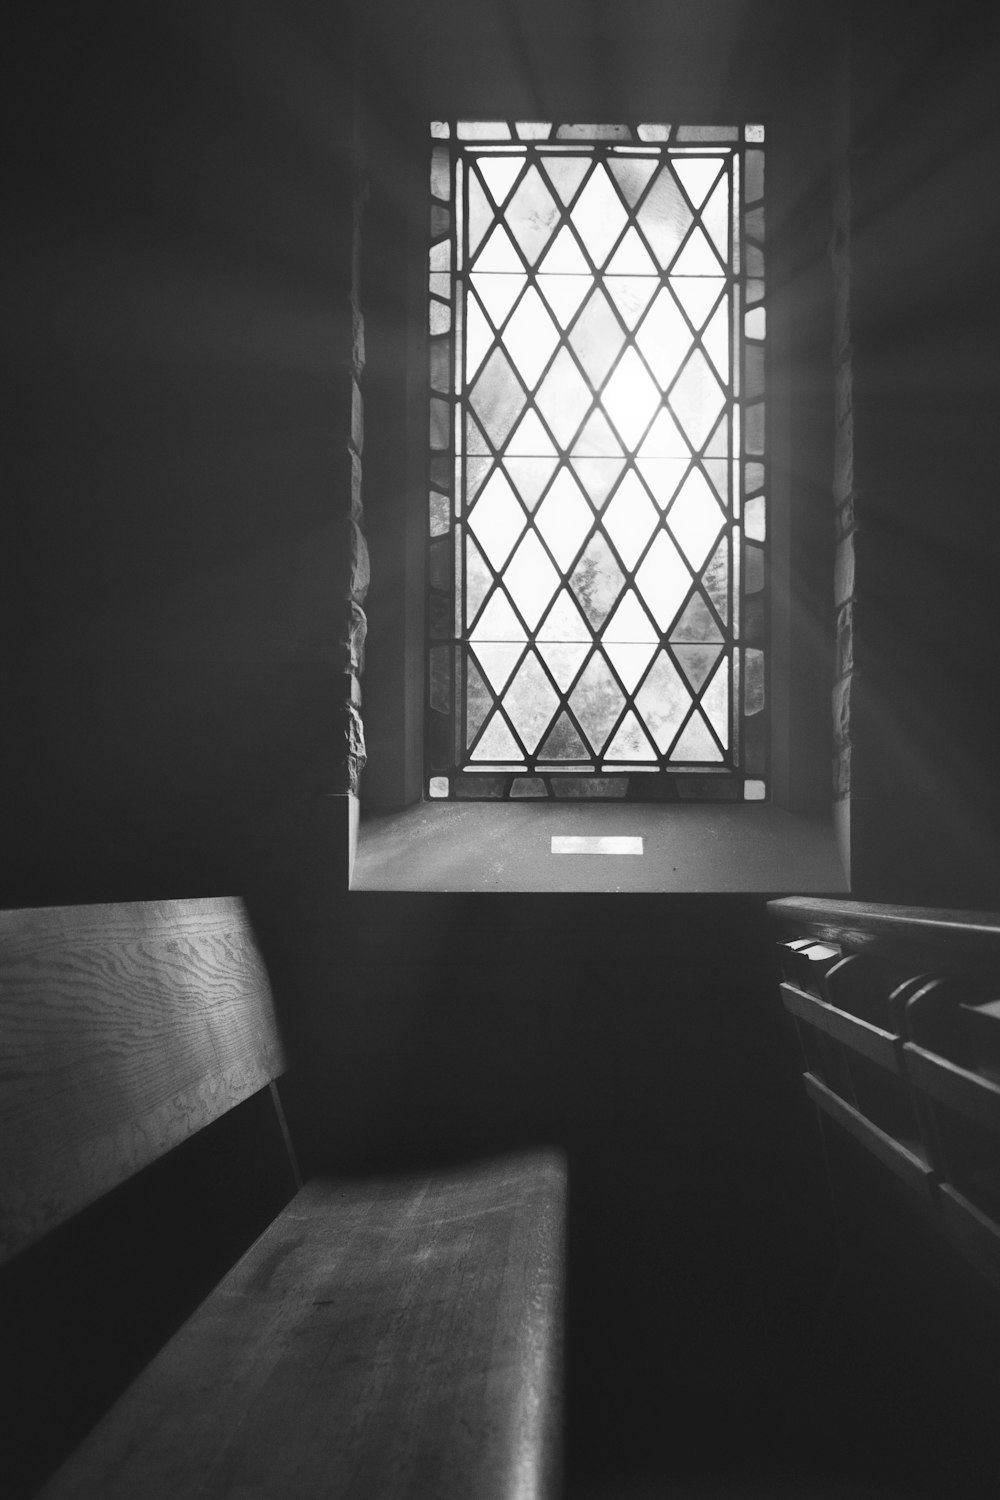 uma foto em preto e branco de uma janela da igreja